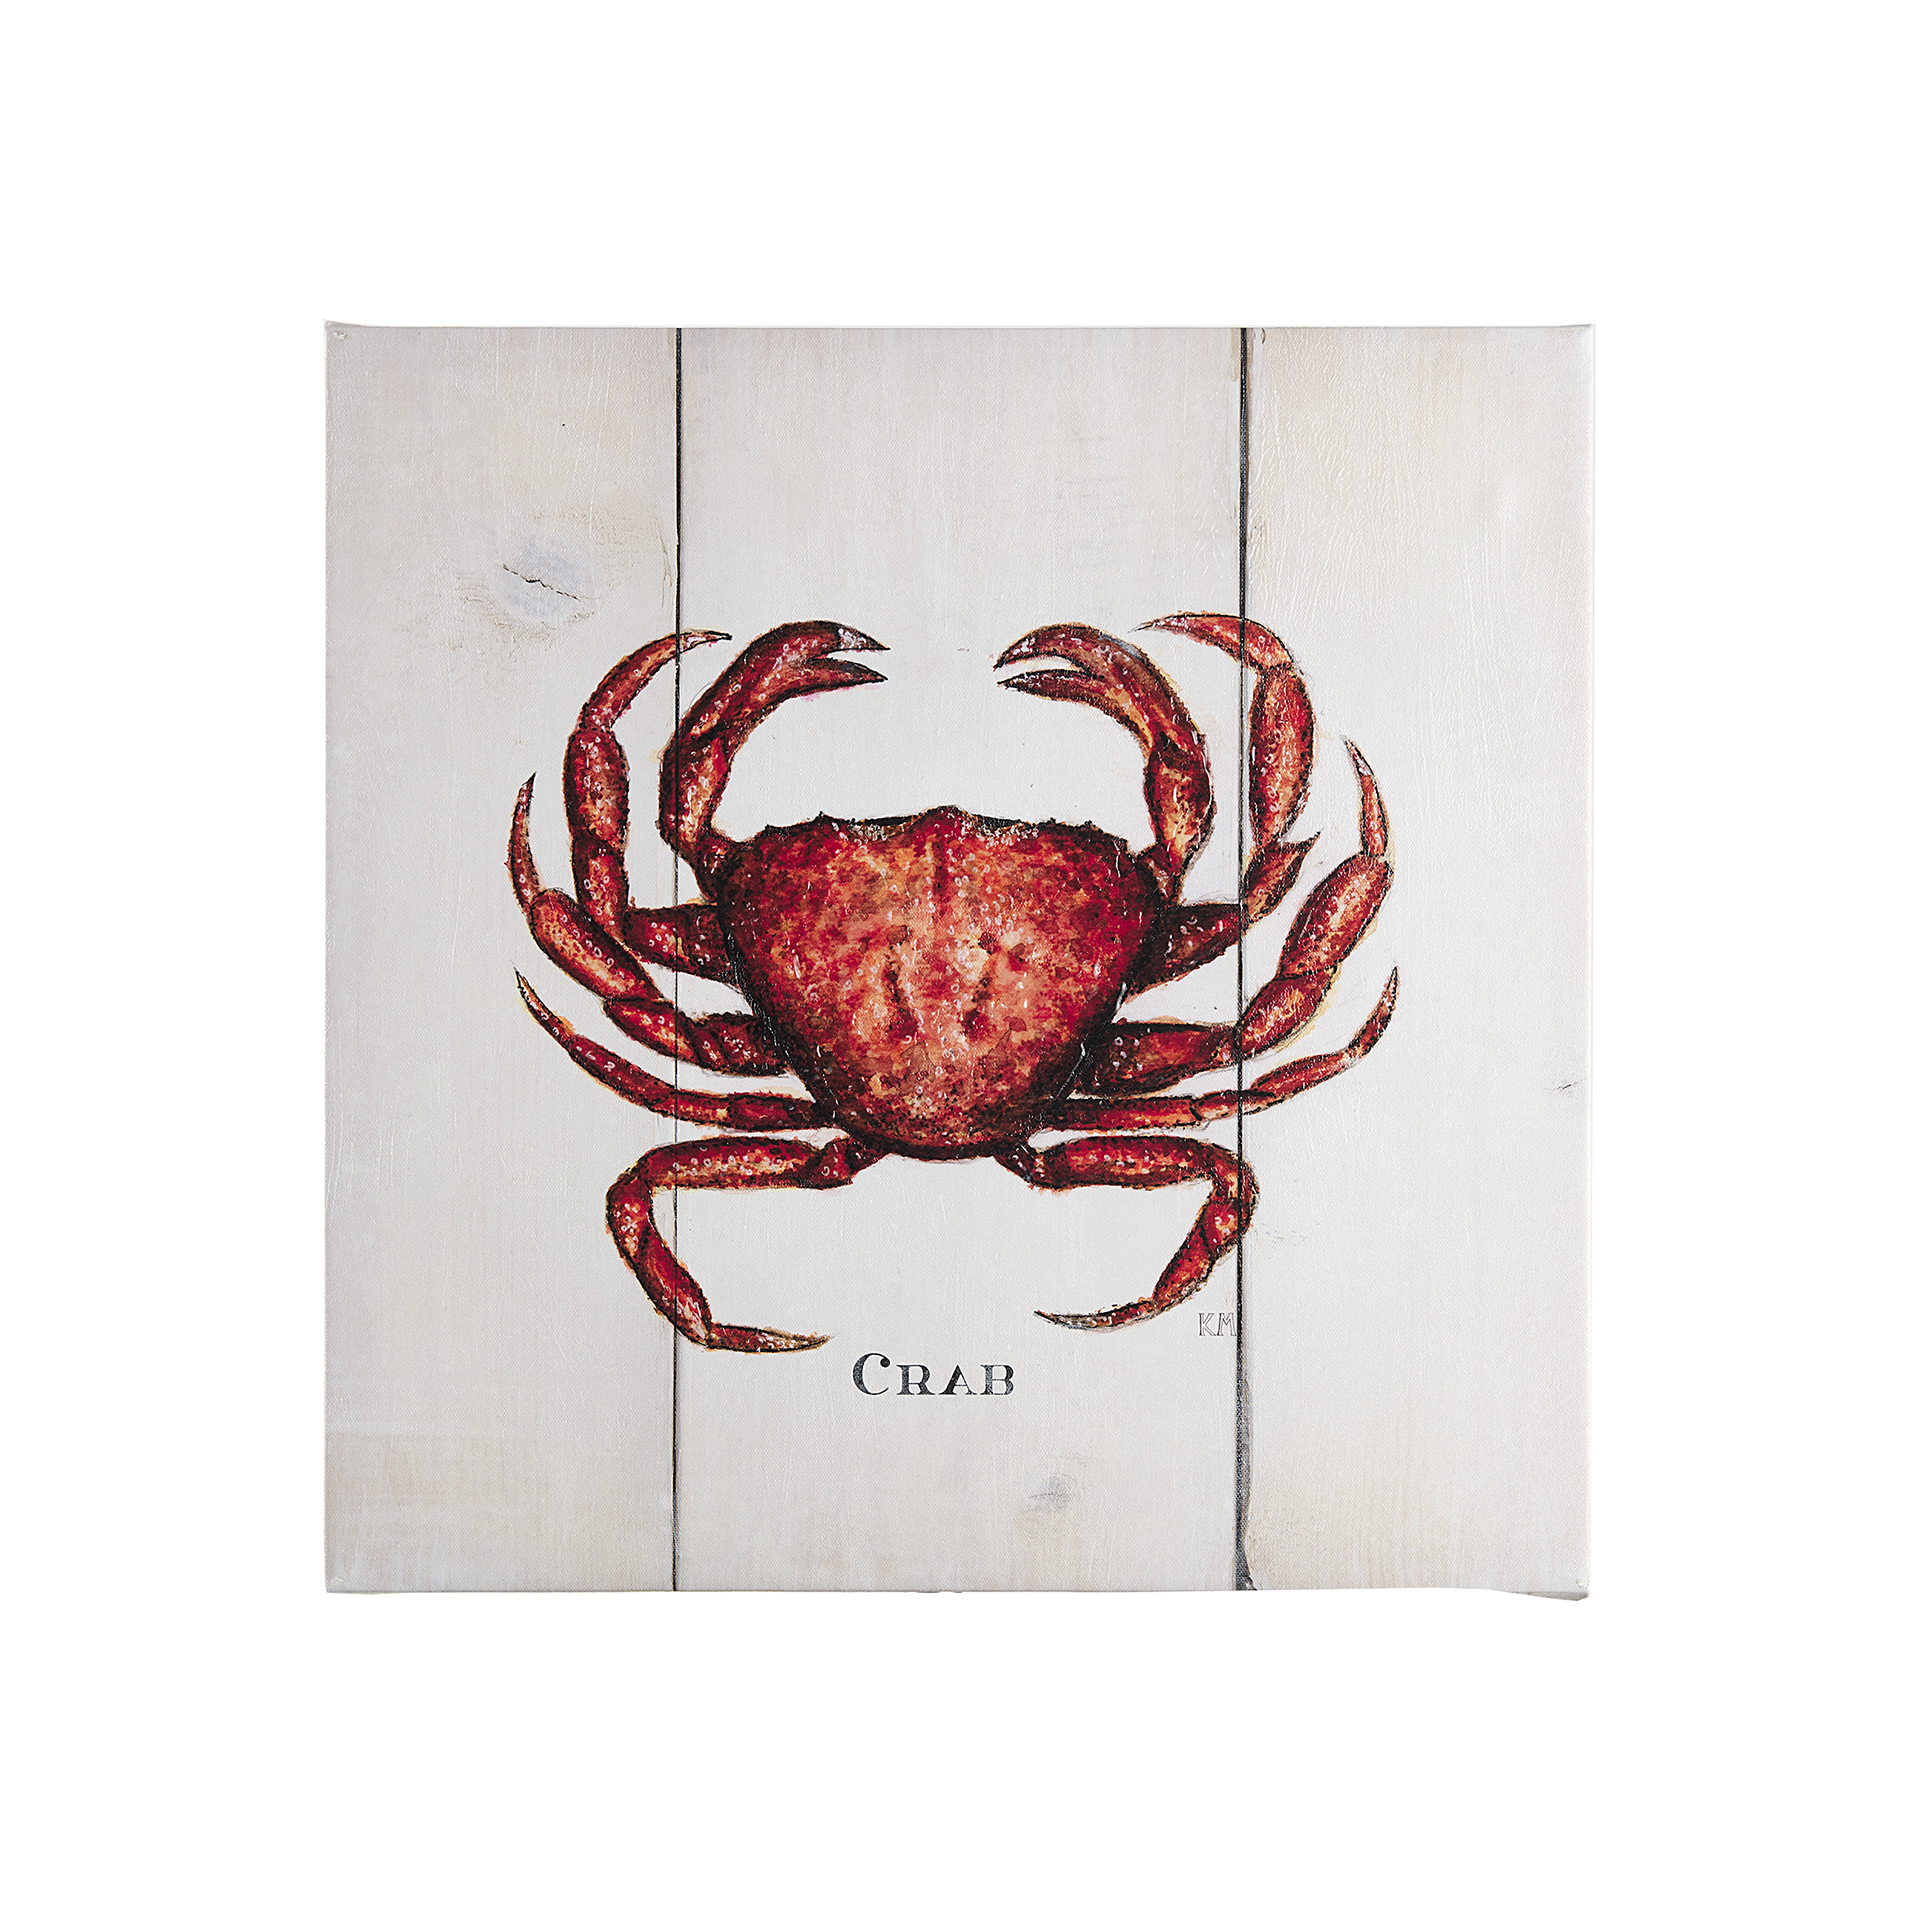 Crab III (20 x 20)